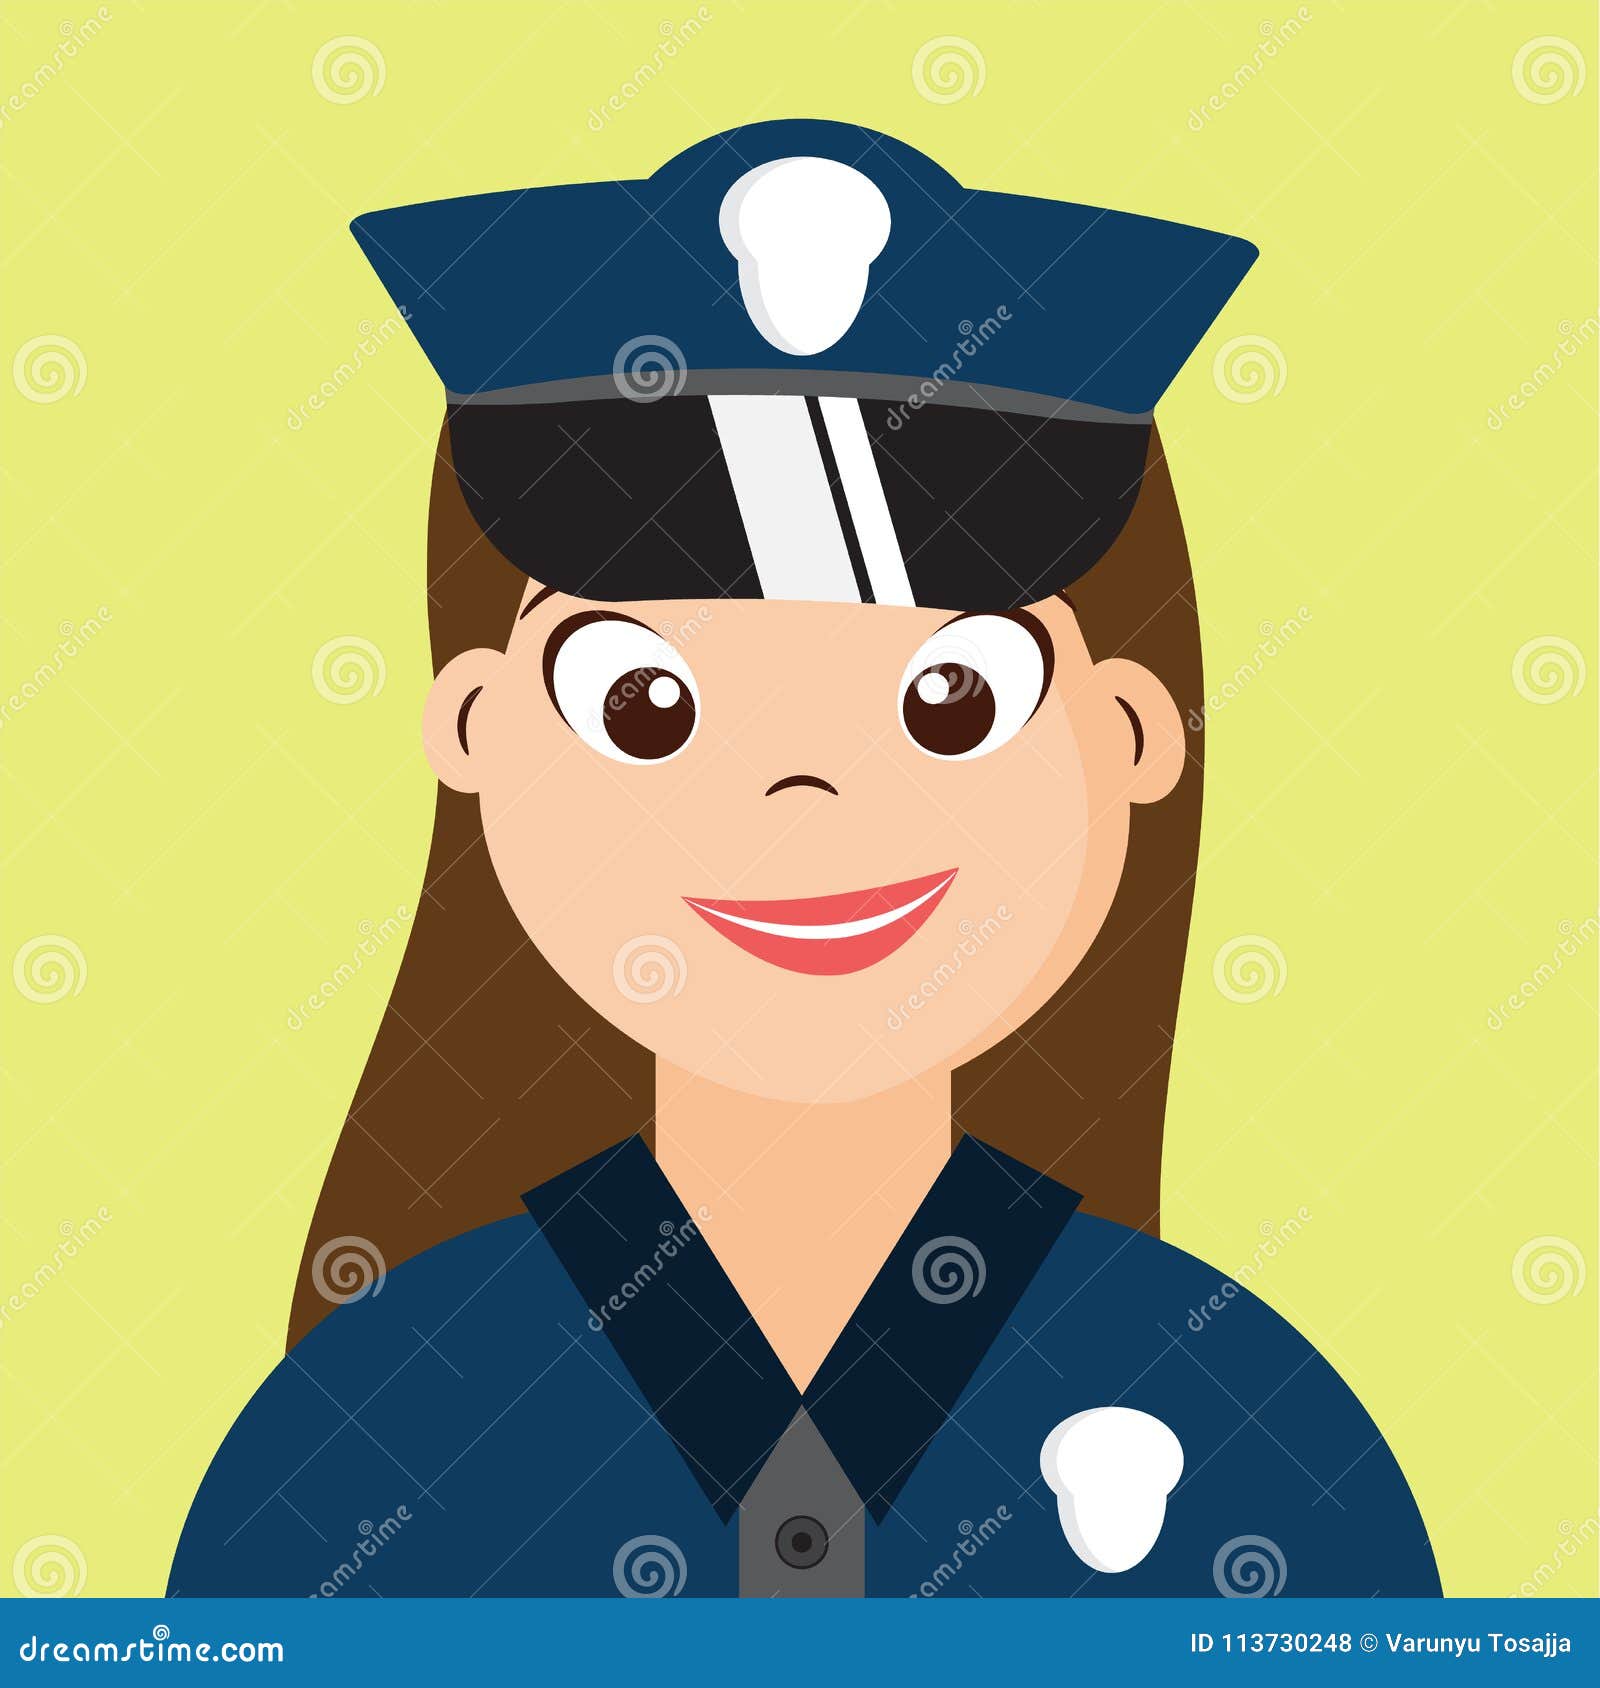 Nosotros Policía Con El Uniforme, Diseño De La Mujer De Personaje De Dibujos  Animados Hermoso, Stock de ilustración - Ilustración de aislado, protector:  113730248